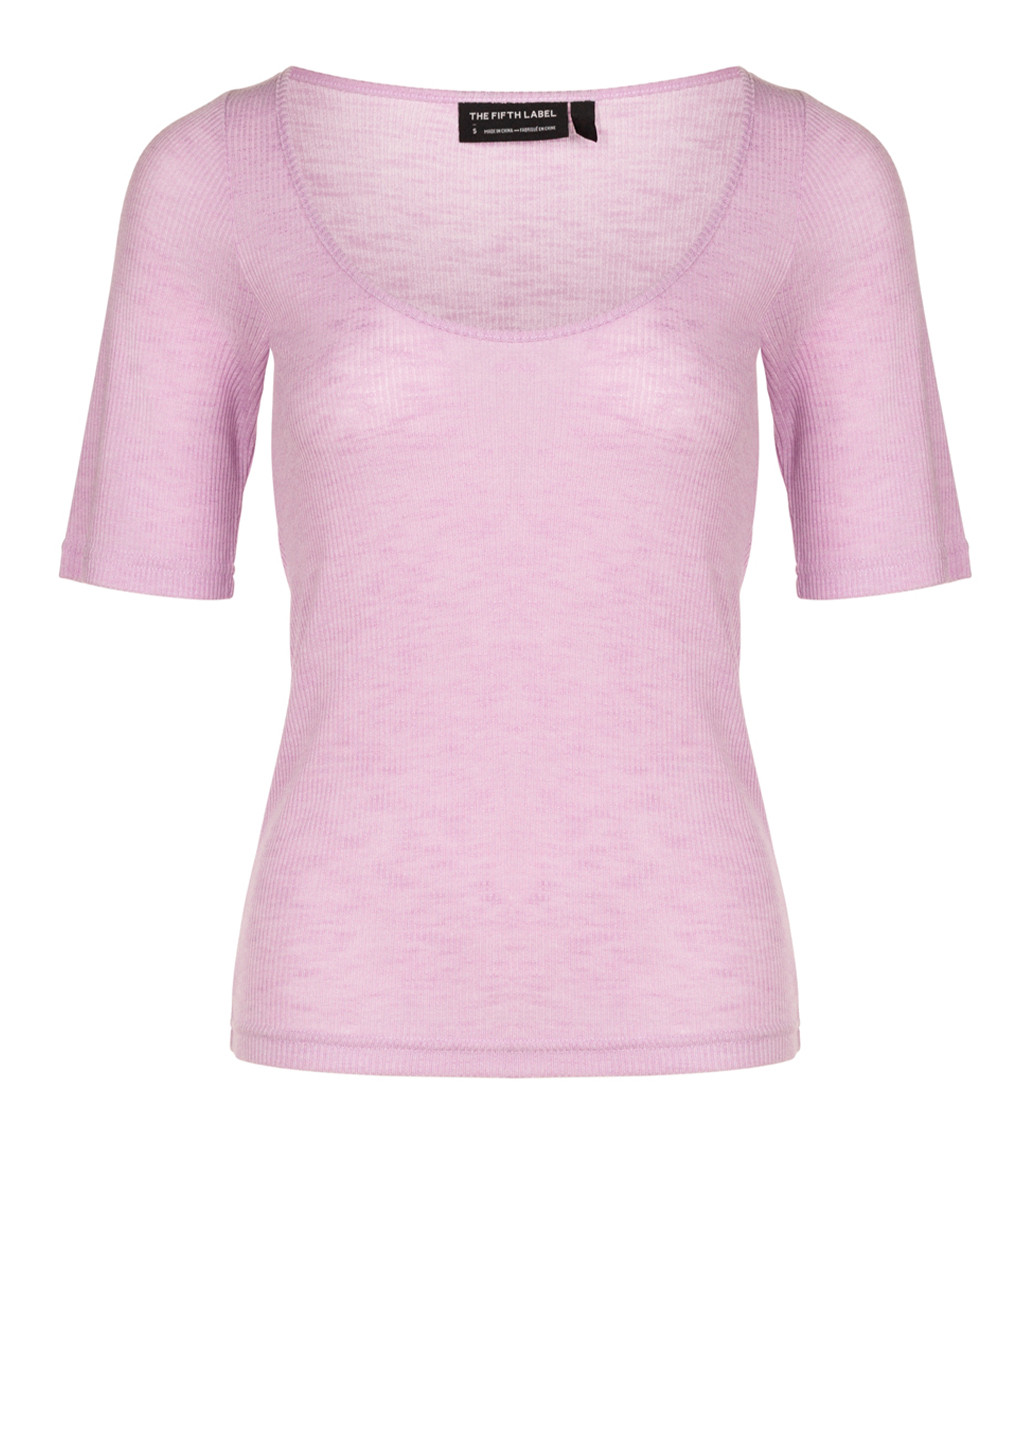 Бузкова літня жіноча бузкова футболка з коротким рукавом The Fifth Label